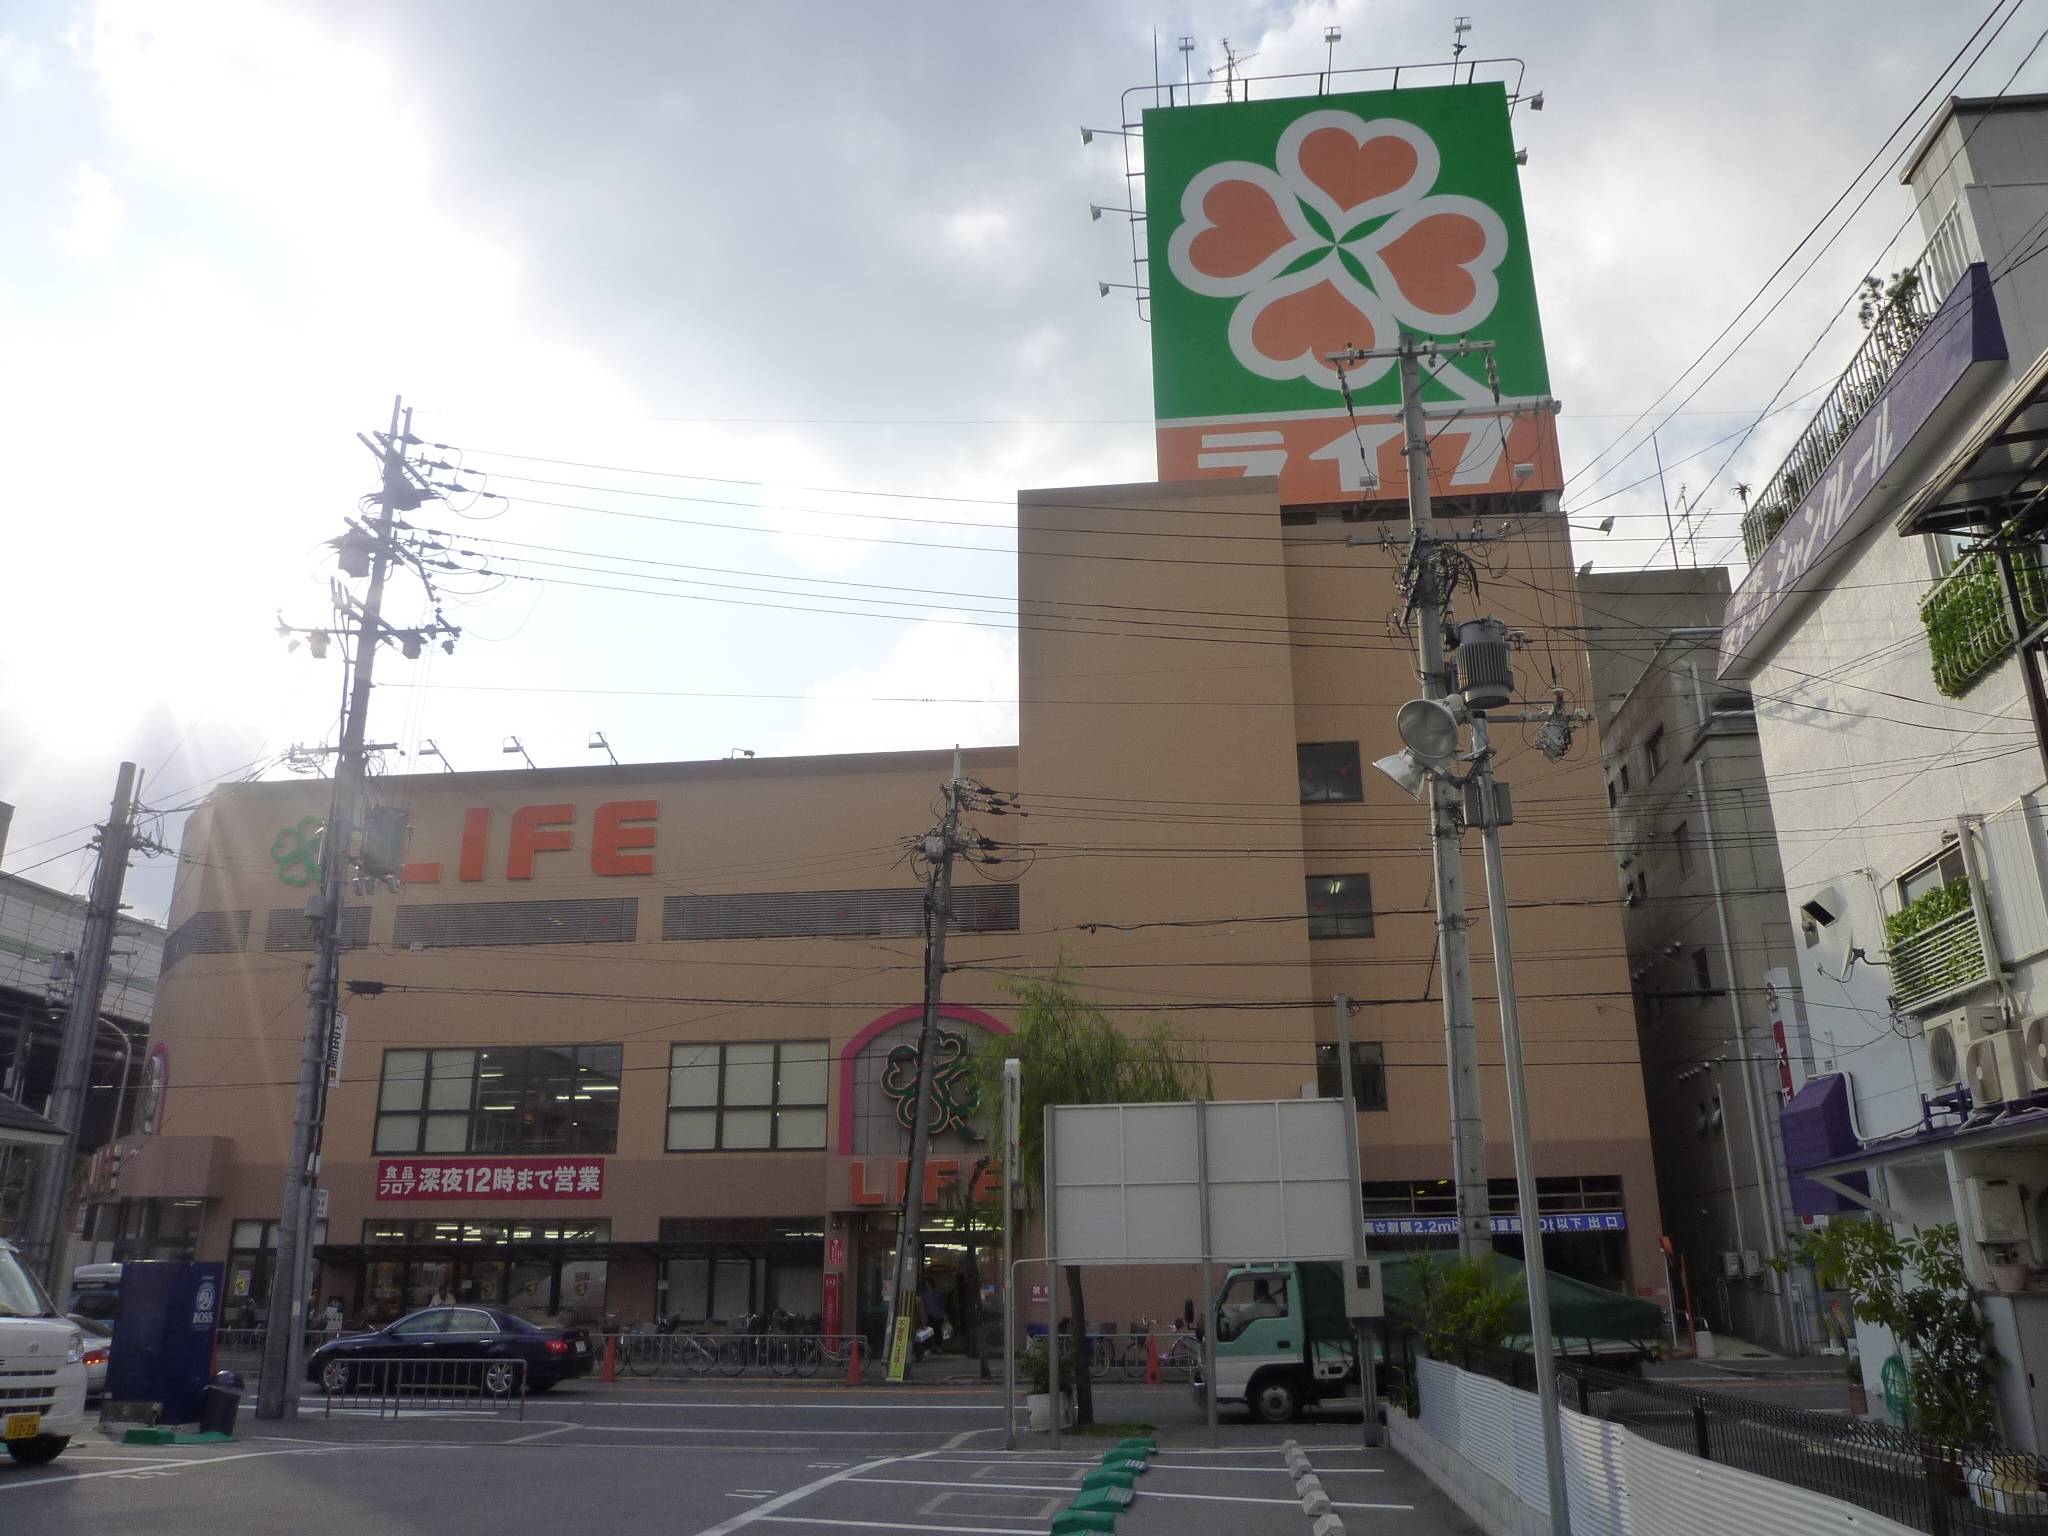 Supermarket. 434m up to life Takaida store (Super)